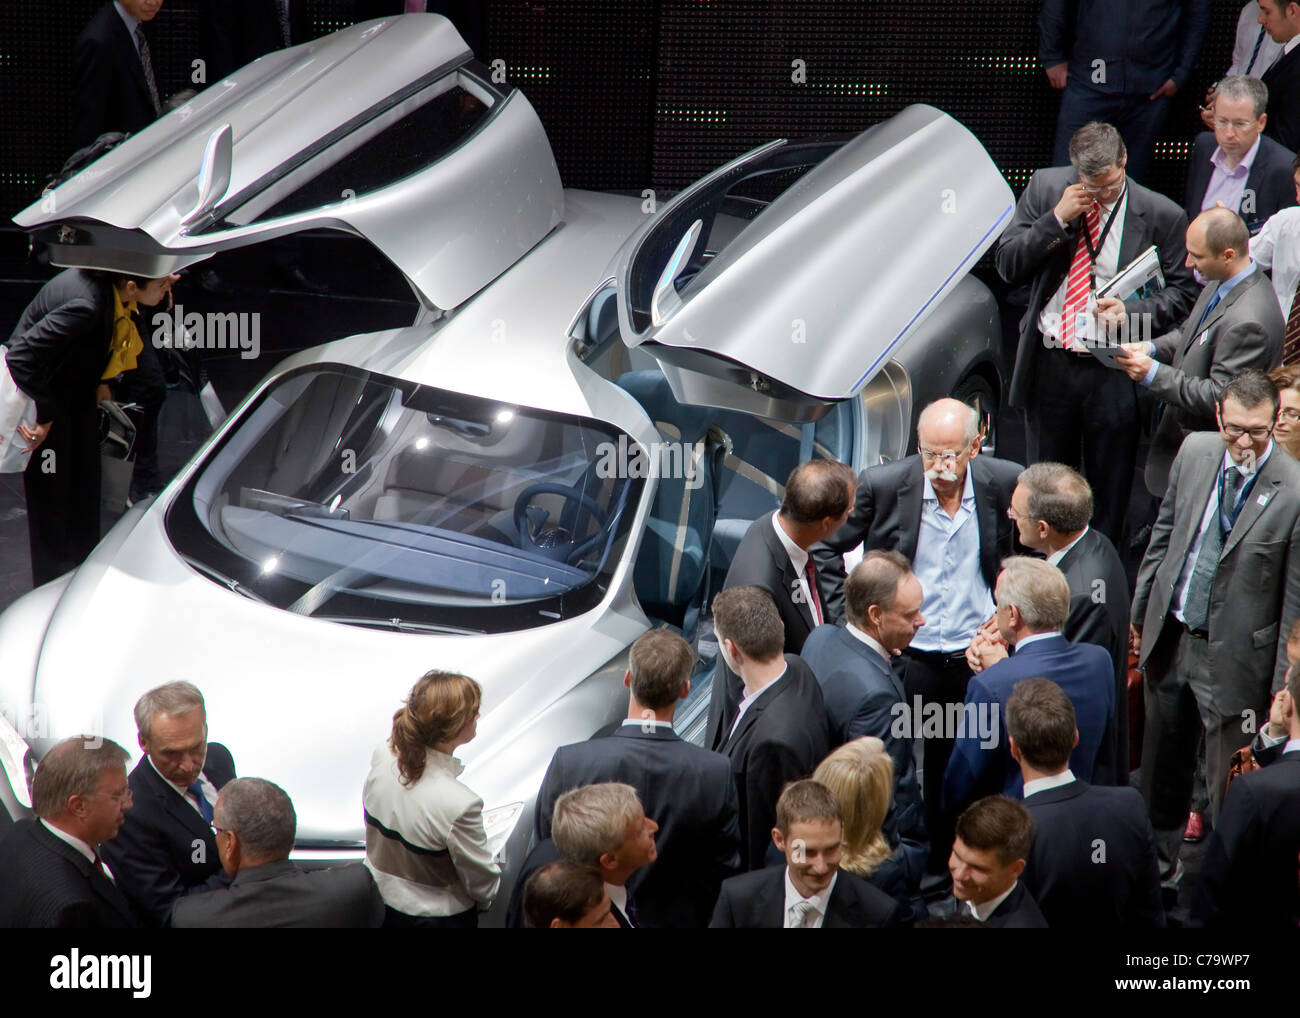 Pdg Dieter Zetsche présente MERCEDES Concept Car électrique F125, de l'AIA 2011 International Motor Show de Francfort am Main, Allemagne Banque D'Images